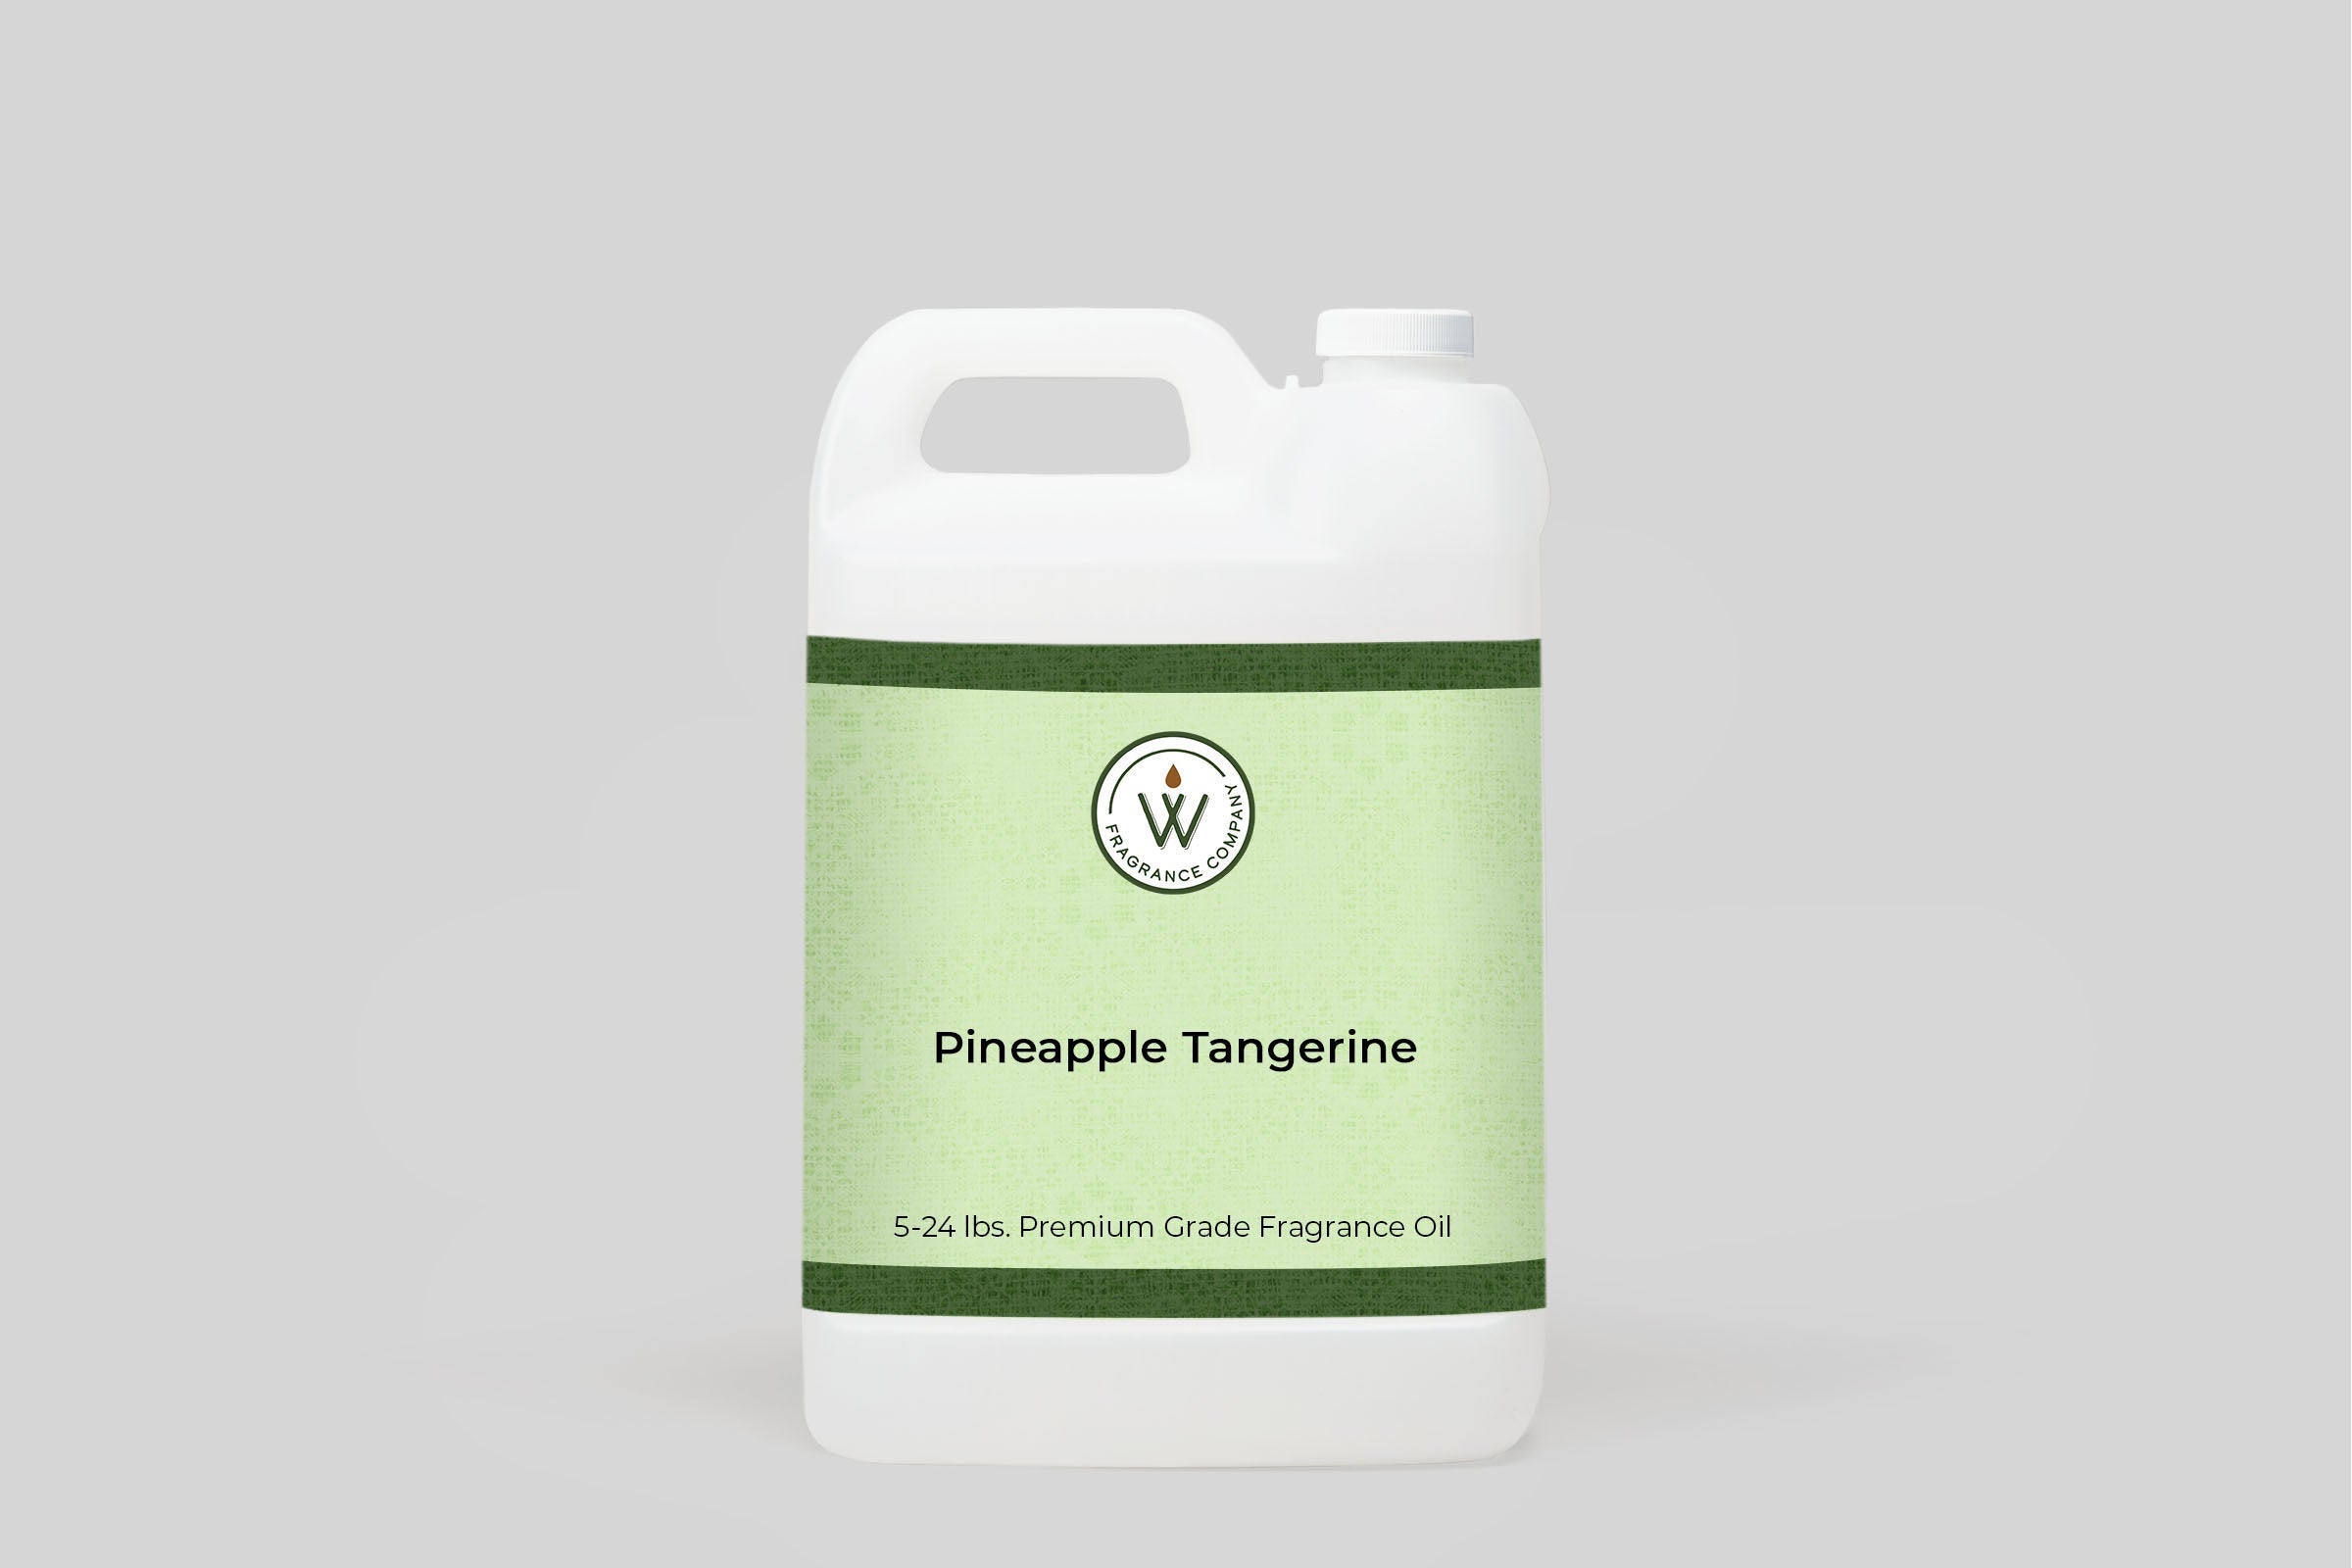 Pineapple Tangerine Fragrance Oil